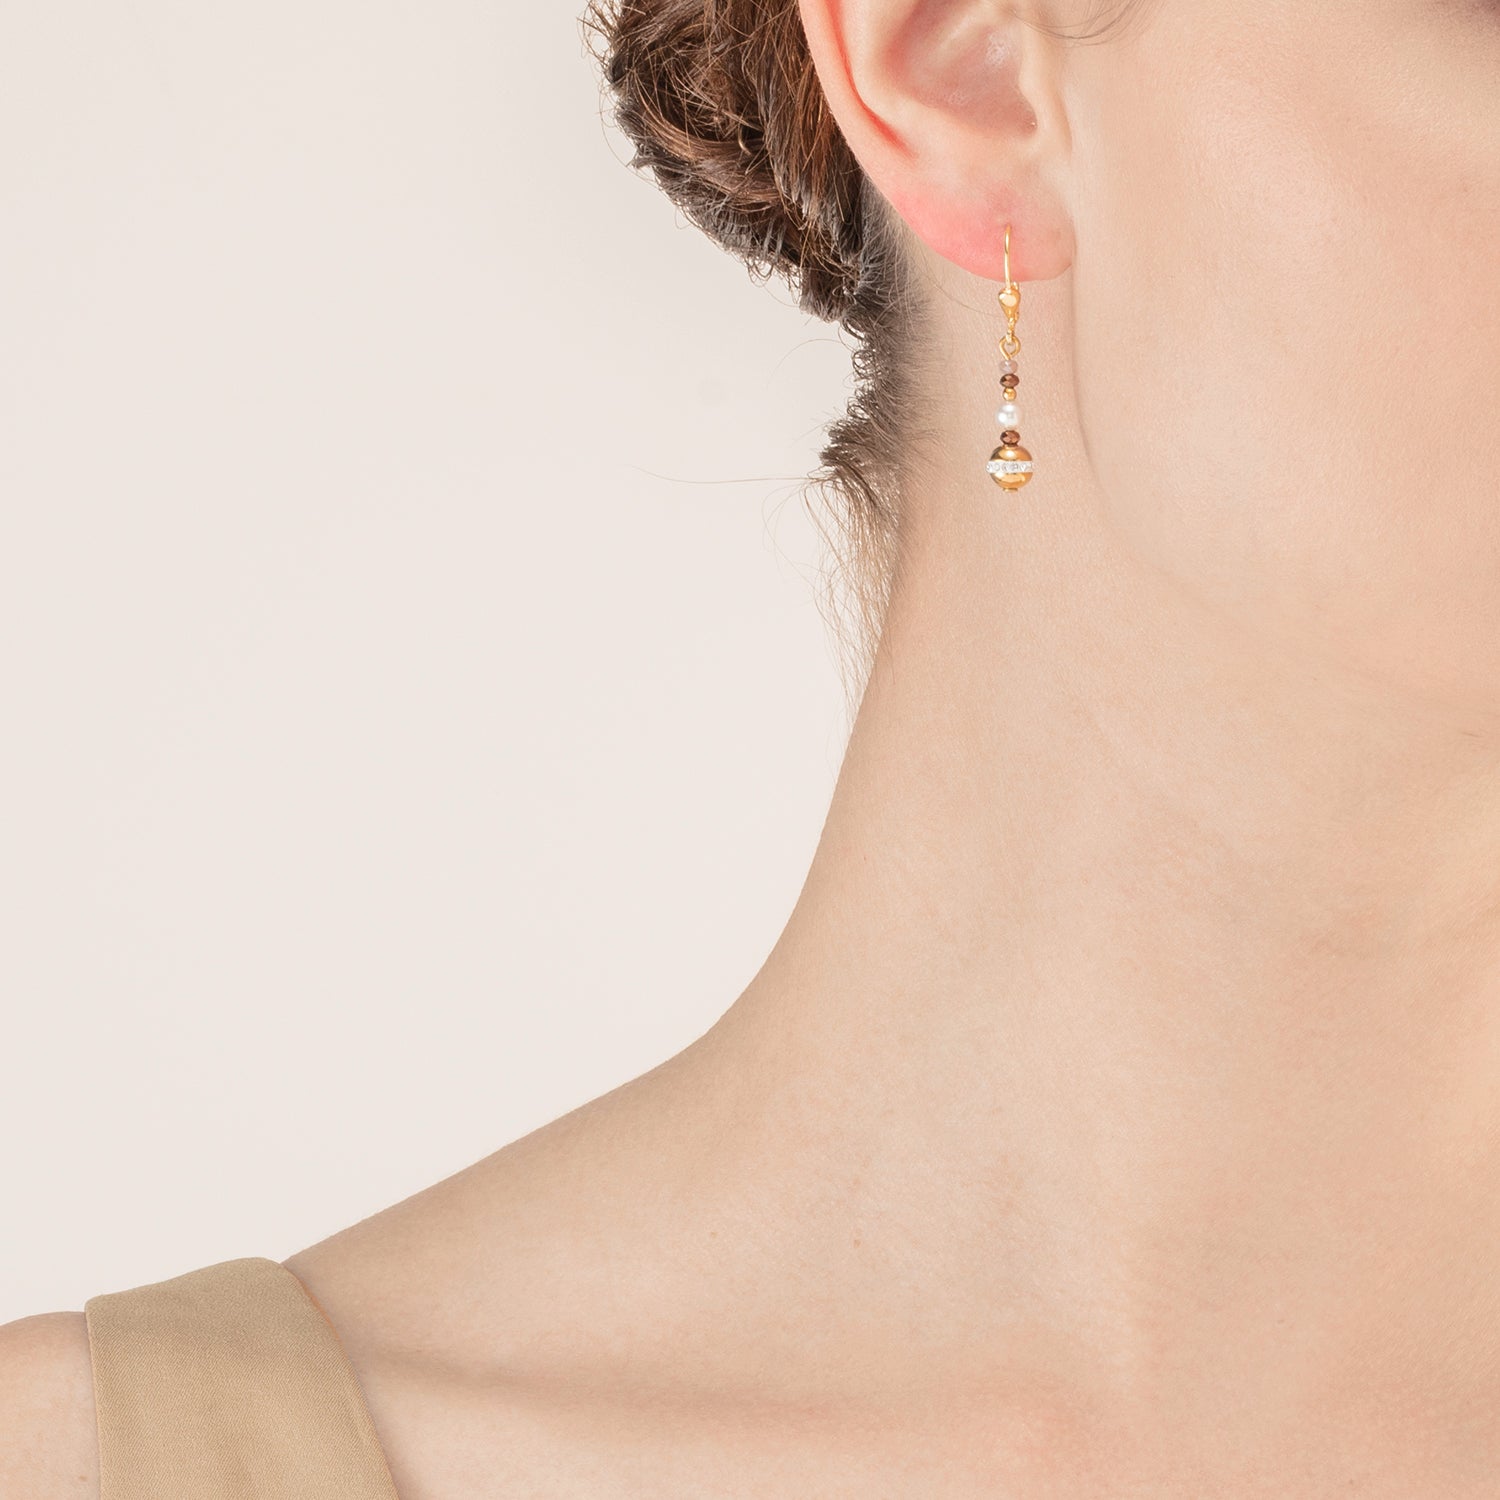 Boucles d'oreilles Boule small de pierres précieuses & Crystal Pearls brun-or